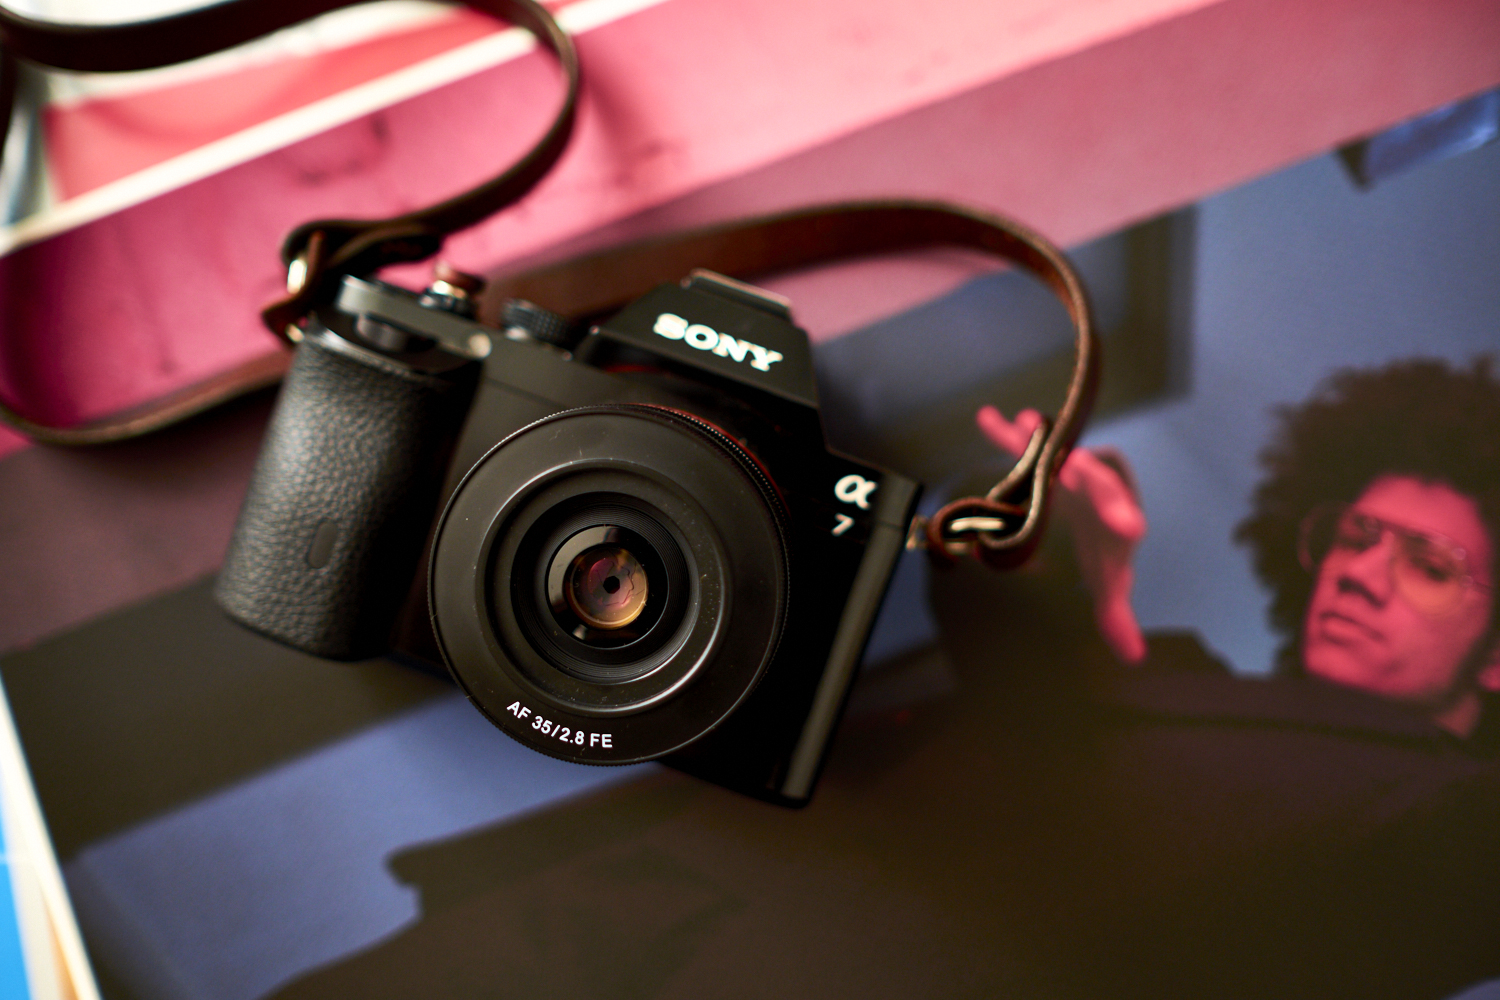 Review: Rokinon 35mm f2.8 FE (Sony FE Full Frame E Mount)